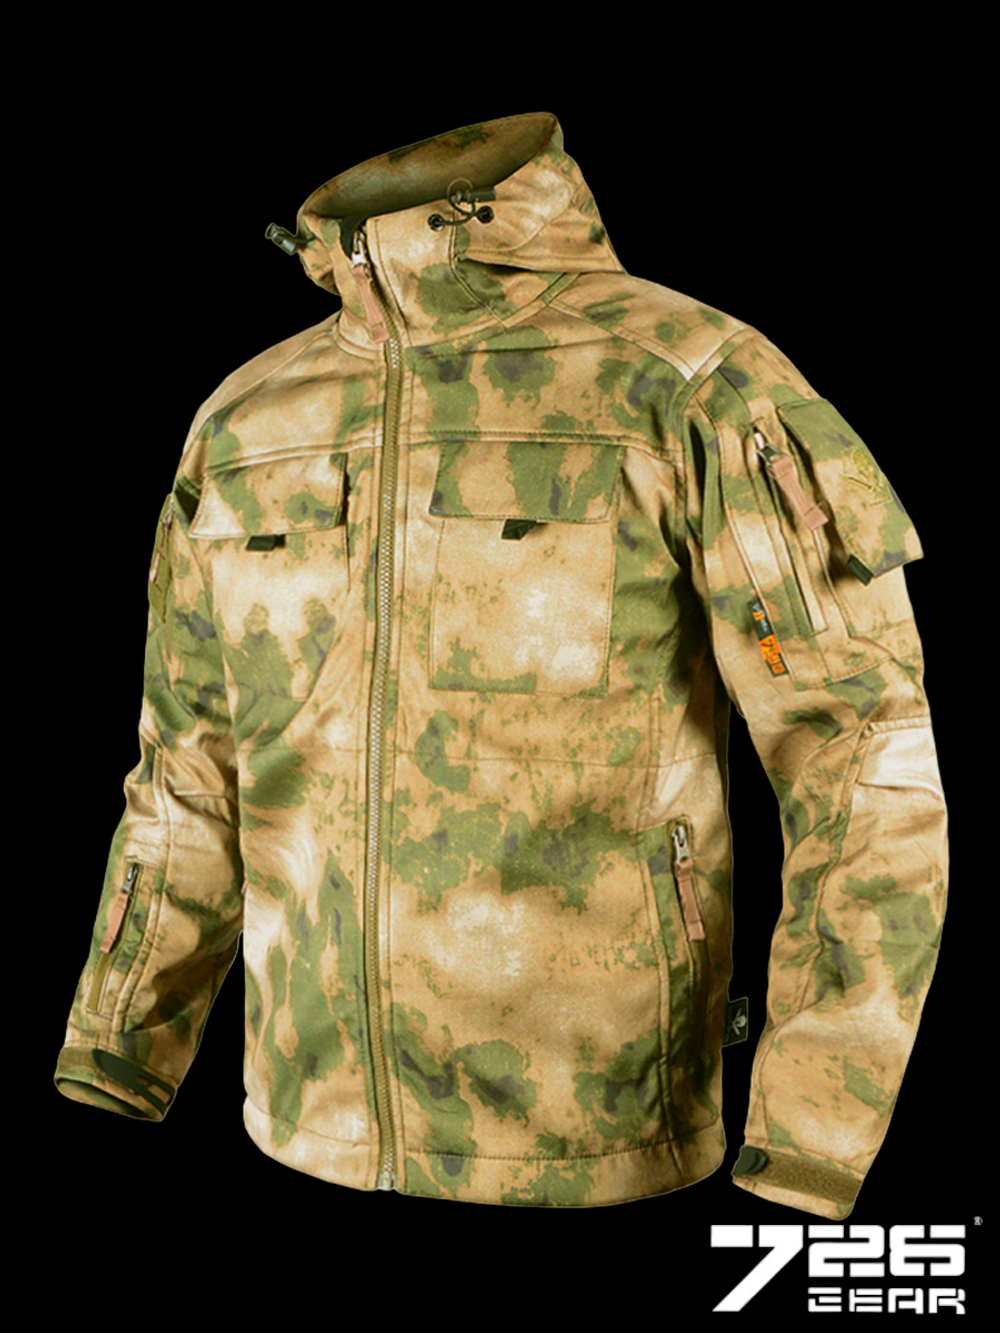 Тактическая флисовая куртка с капюшоном 726 GEAR ARMYFANS. Мох